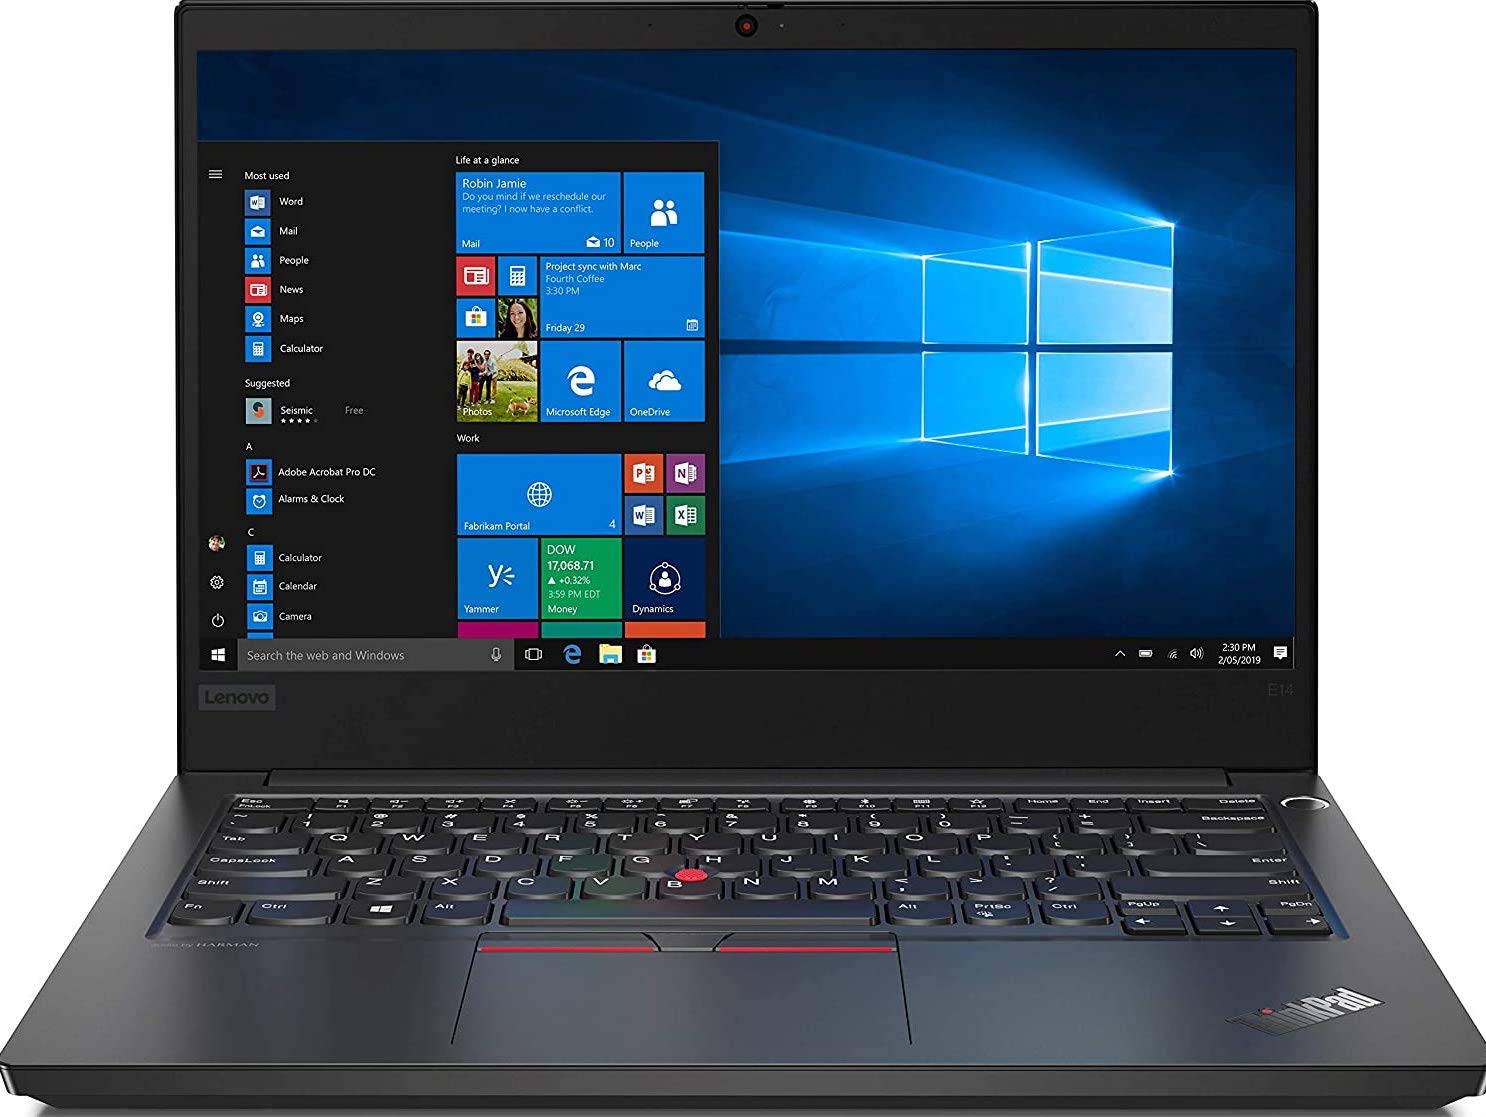 Lenovo ThinkPad E14 Intel Core i3 10th Gen 14-inch Full HD Laptop 4GB RAM/ 1TB HDD/ Windows 10 Home/ Black/ 1.69 kg/ 1 Year Warranty